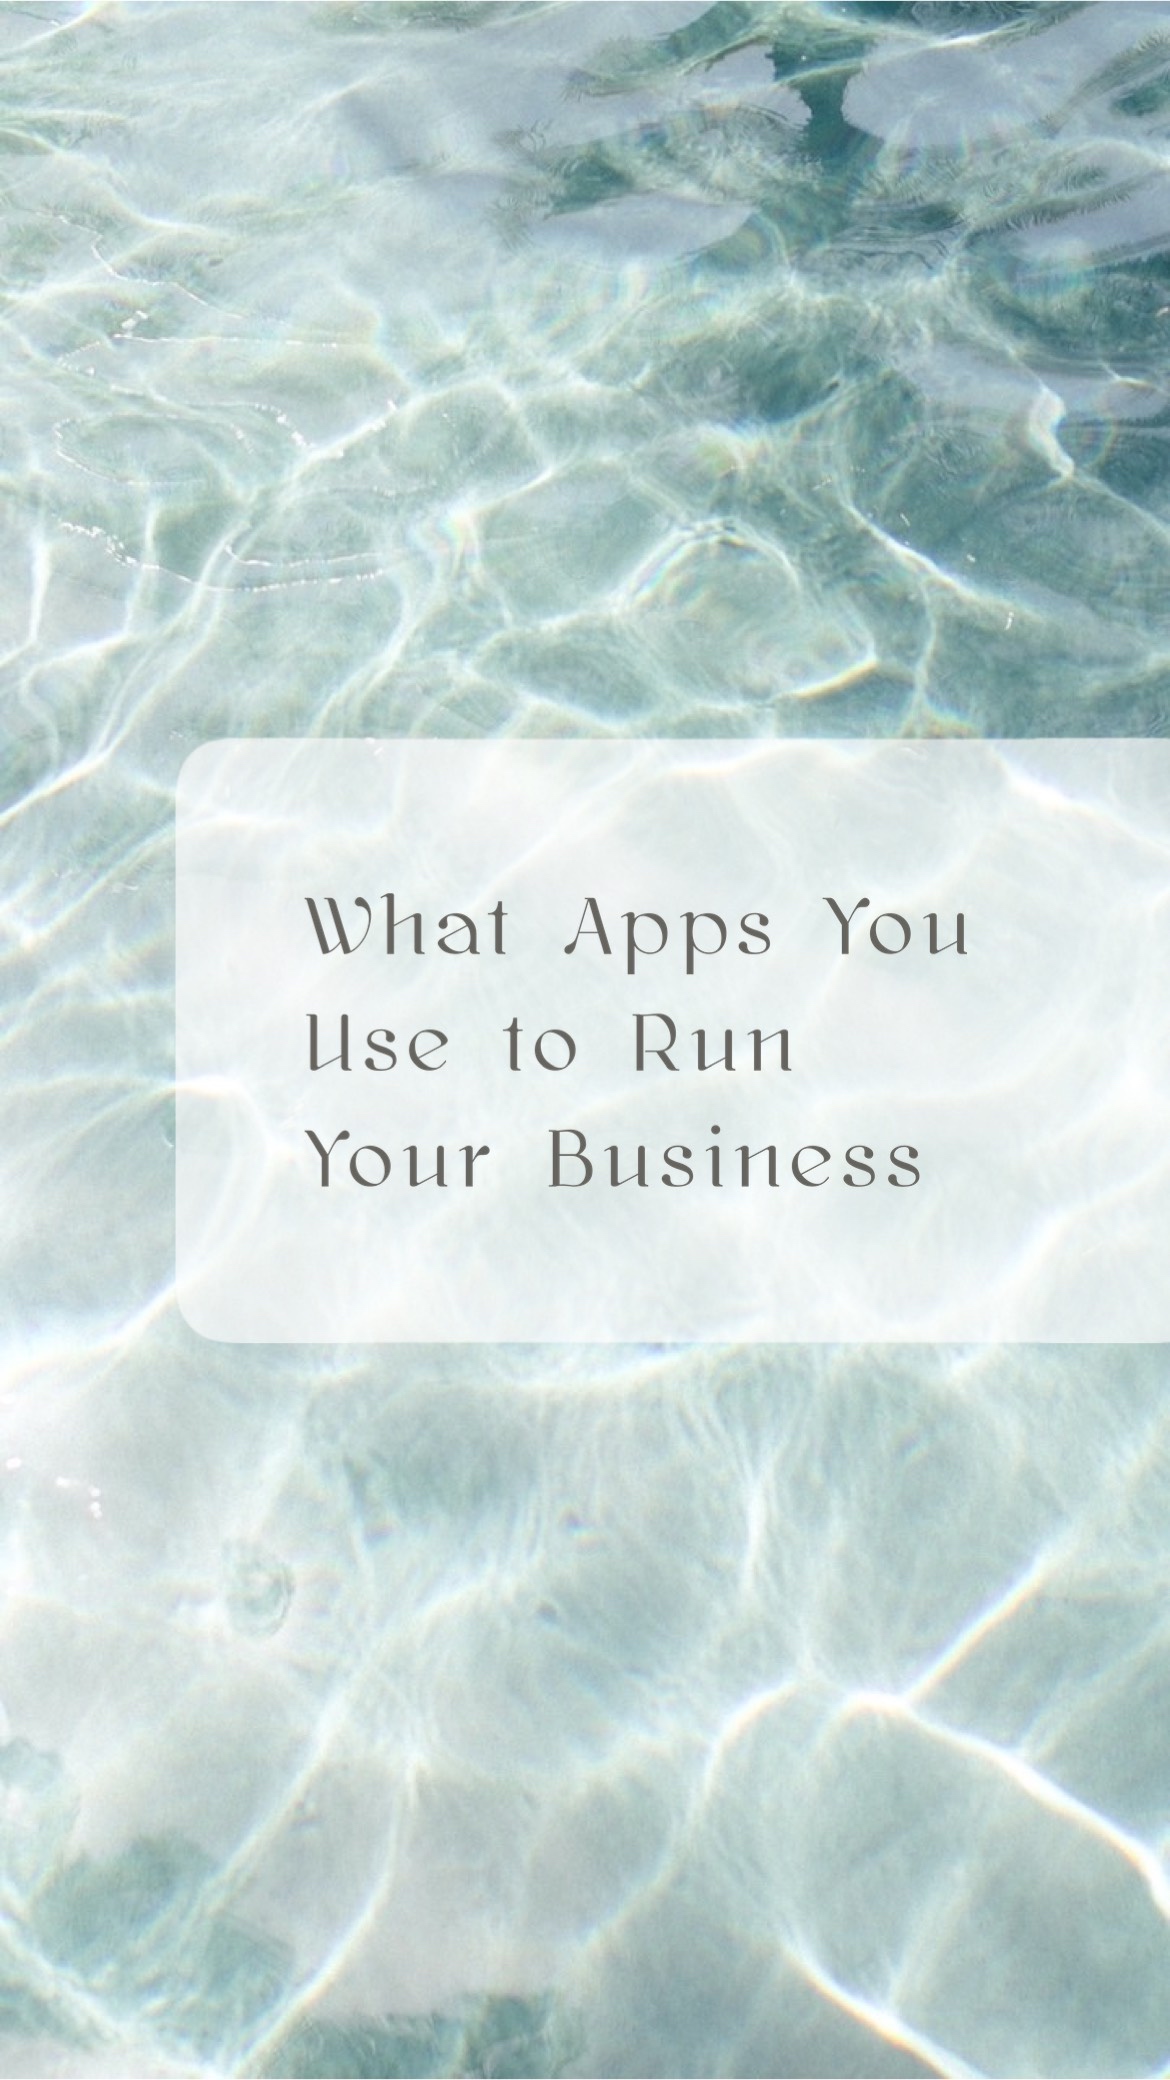 Instagram Reel Summer Pool Water Apps Business Social Media